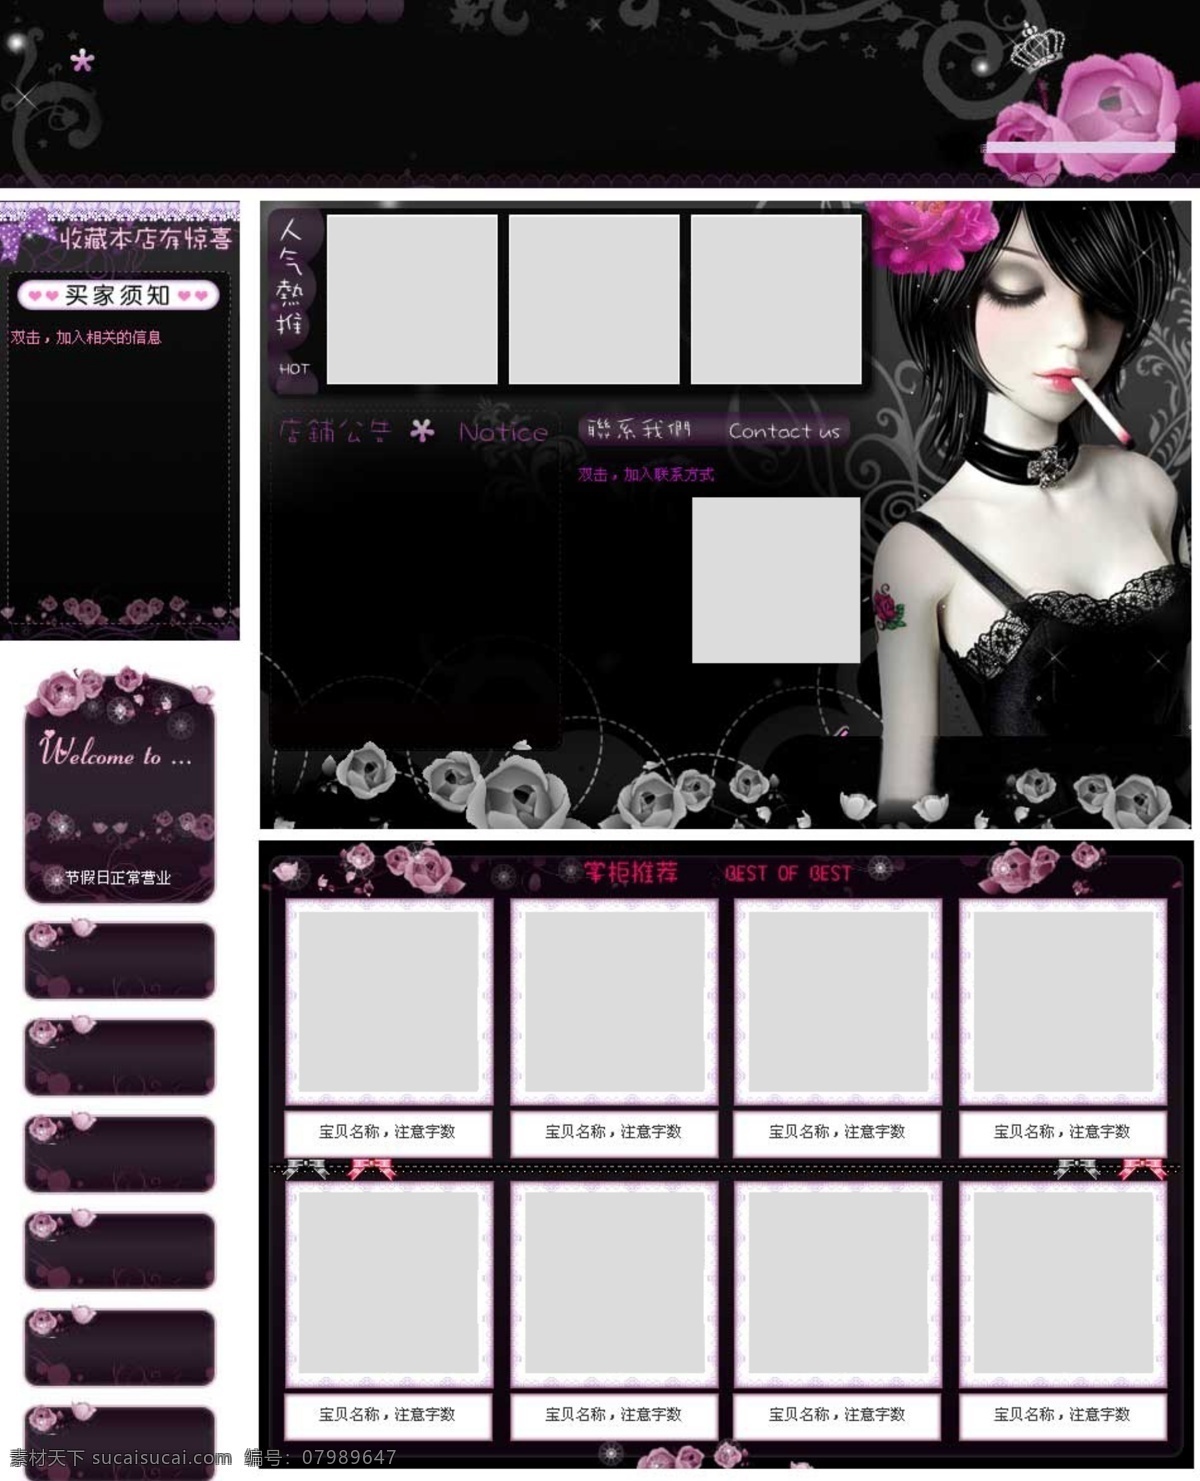 深 黑色 酷 炫 模板 烟酒 紫色花朵装饰 女士内衣 淘宝素材 淘宝店铺首页